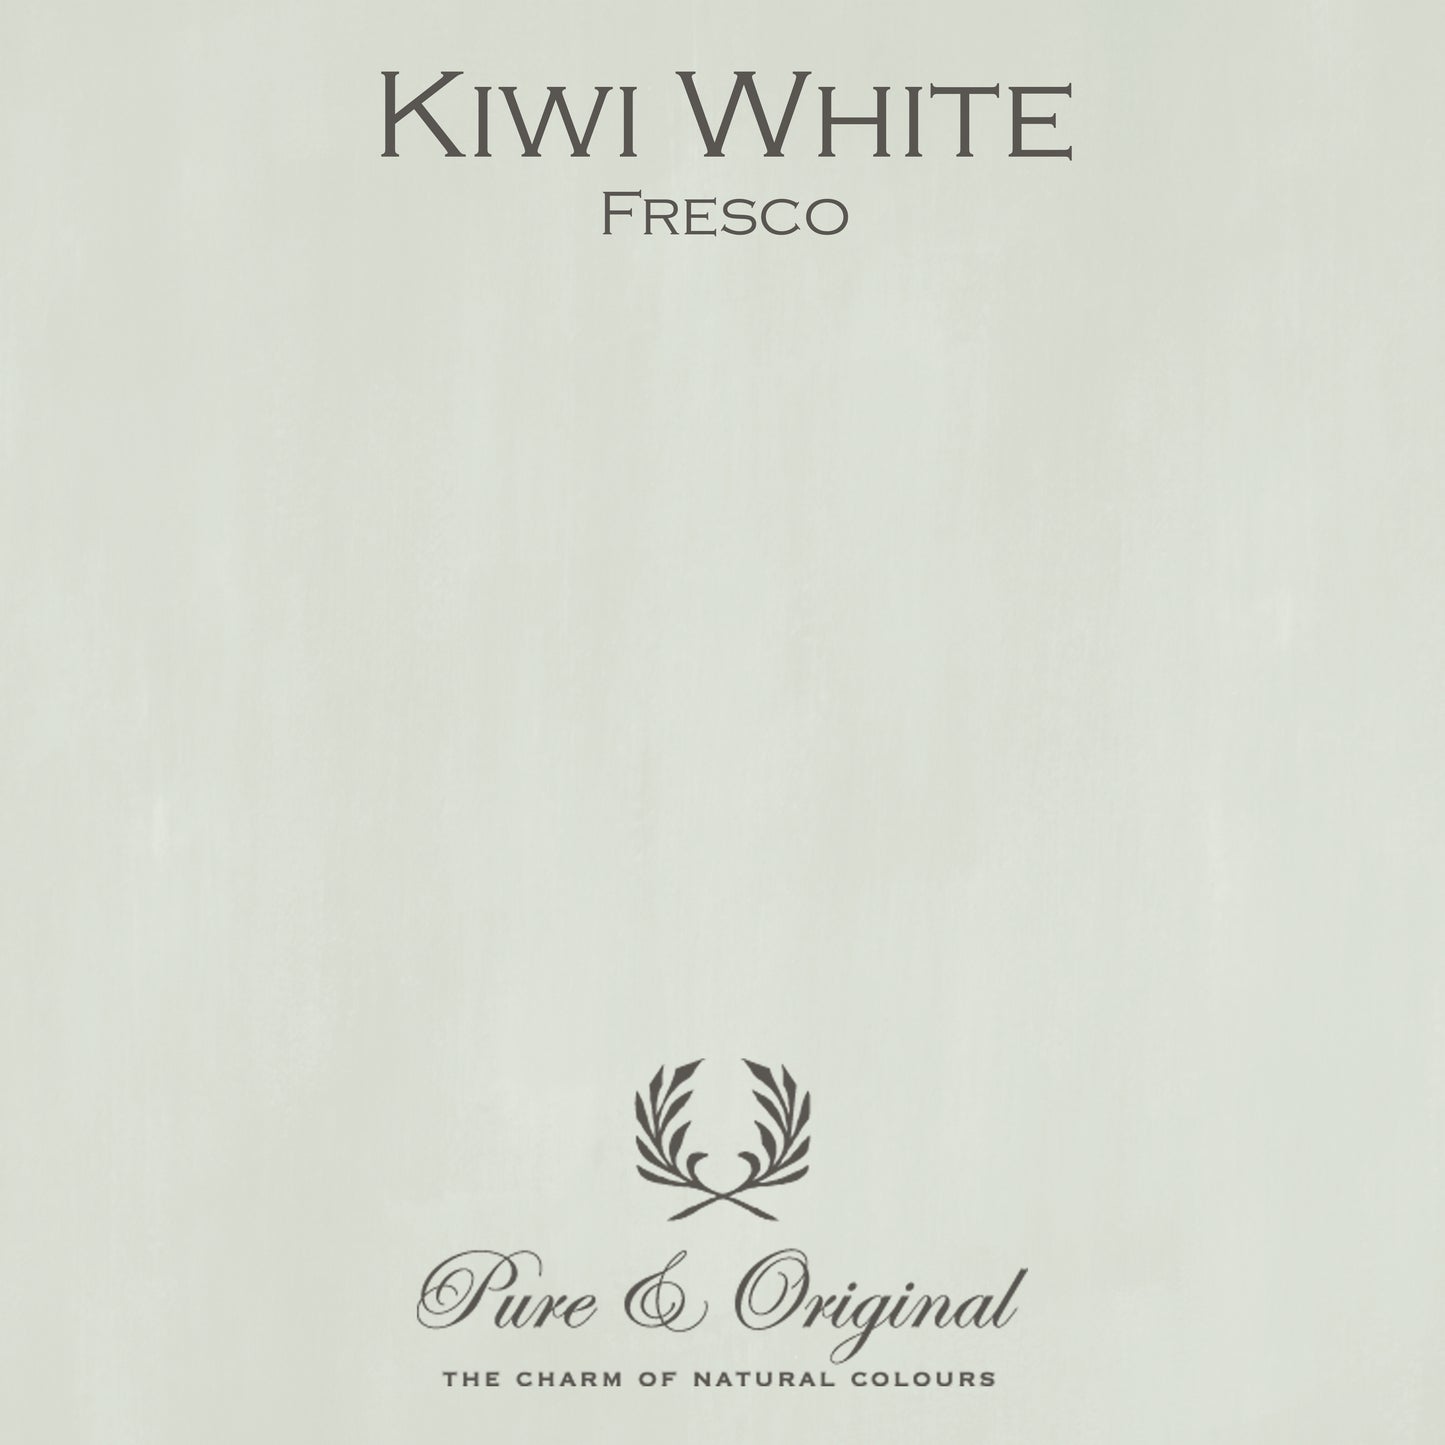 KIWI WHITE